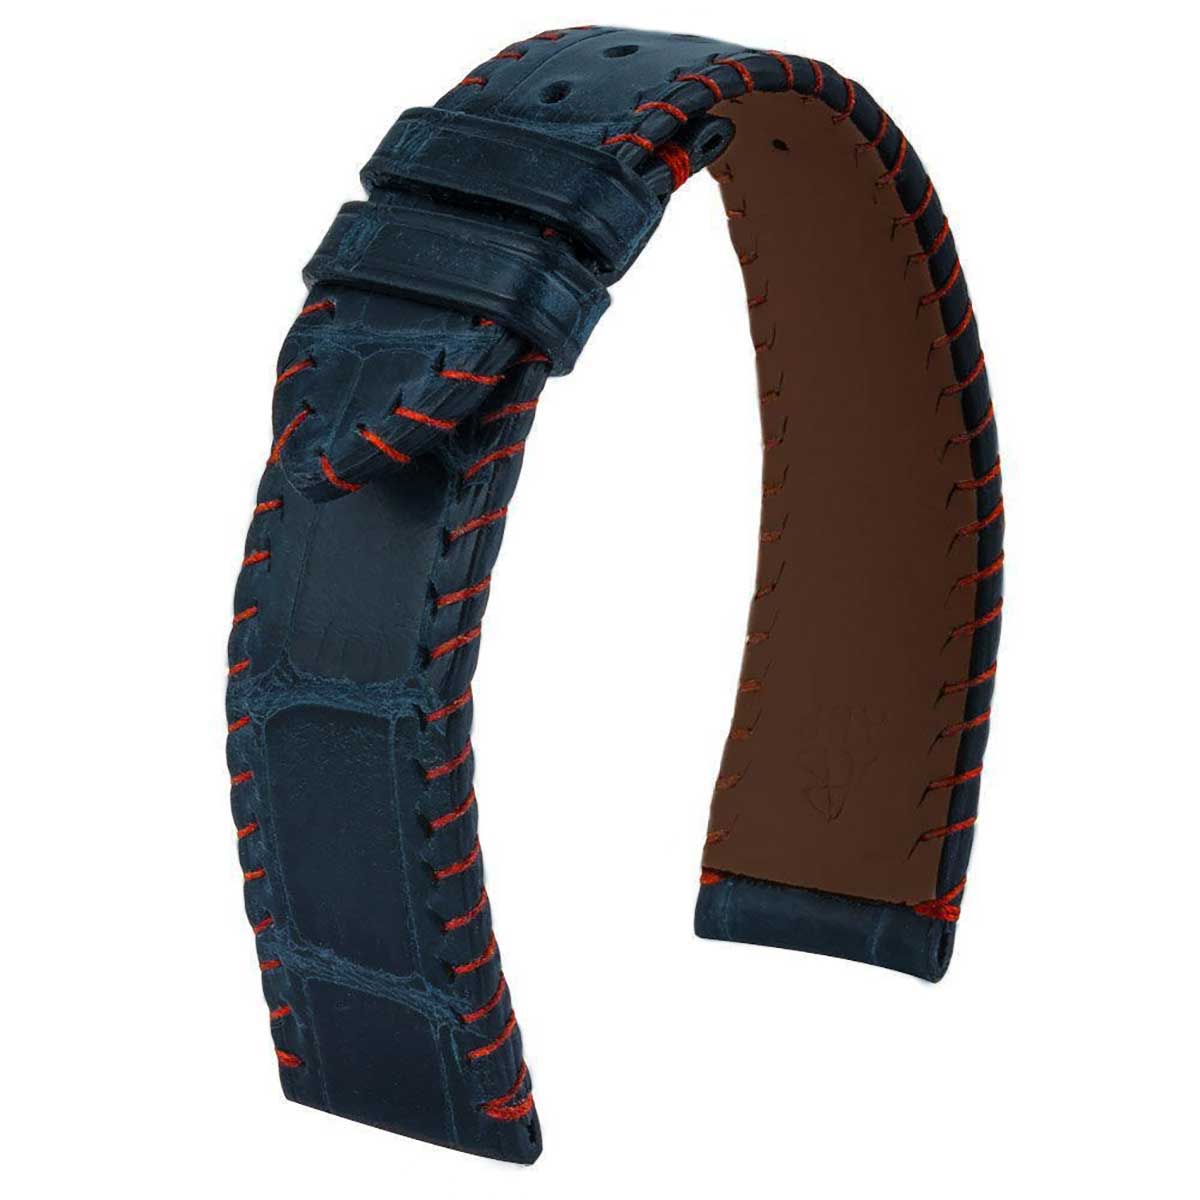 Bracelet montre cuir - Yachting couture semi tribale - Alligator (marron / bleu, bleu / marron) - watch band leather strap - ABP Concept